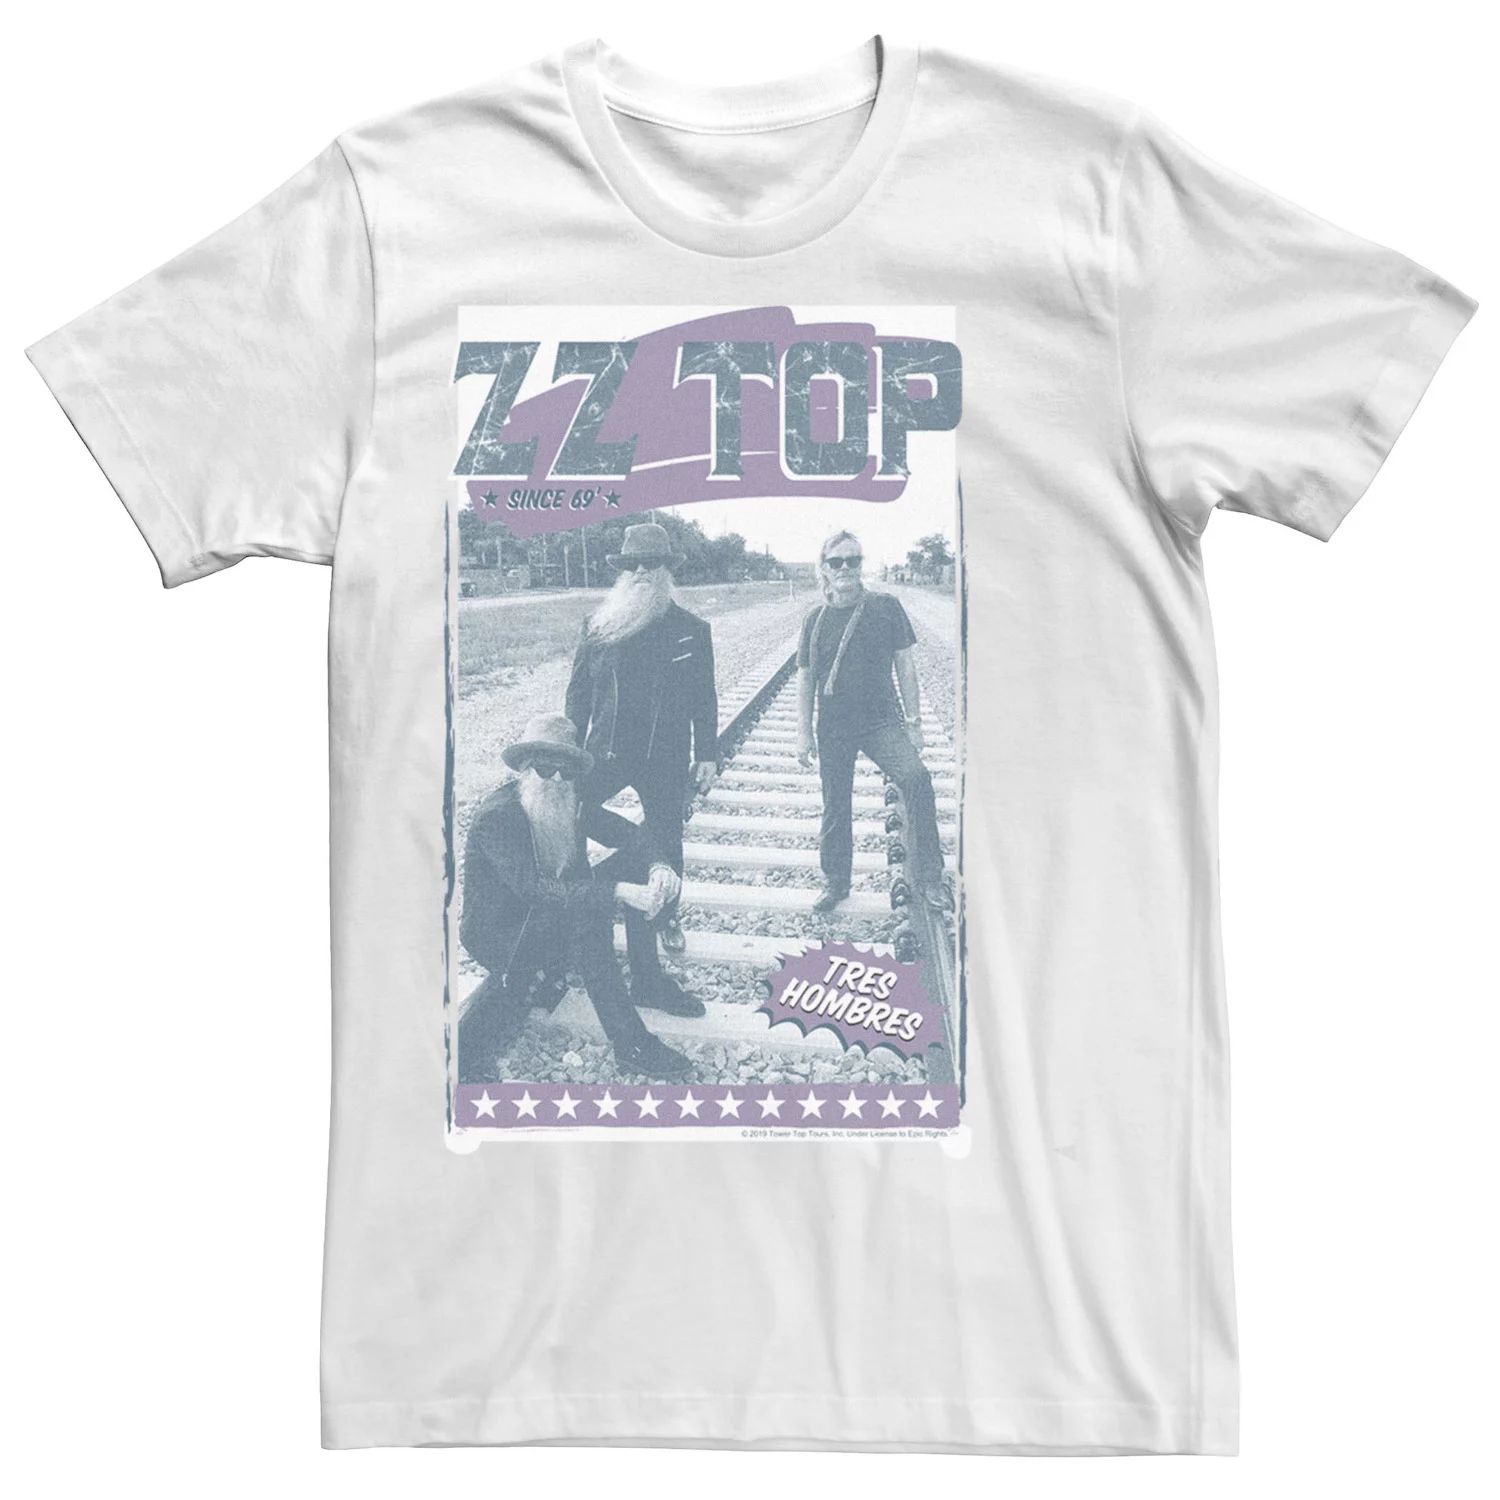 Мужская футболка с длинными рукавами и графическим рисунком ZZ Top Tres Hombres Railroad Licensed Character zz top tres hombres